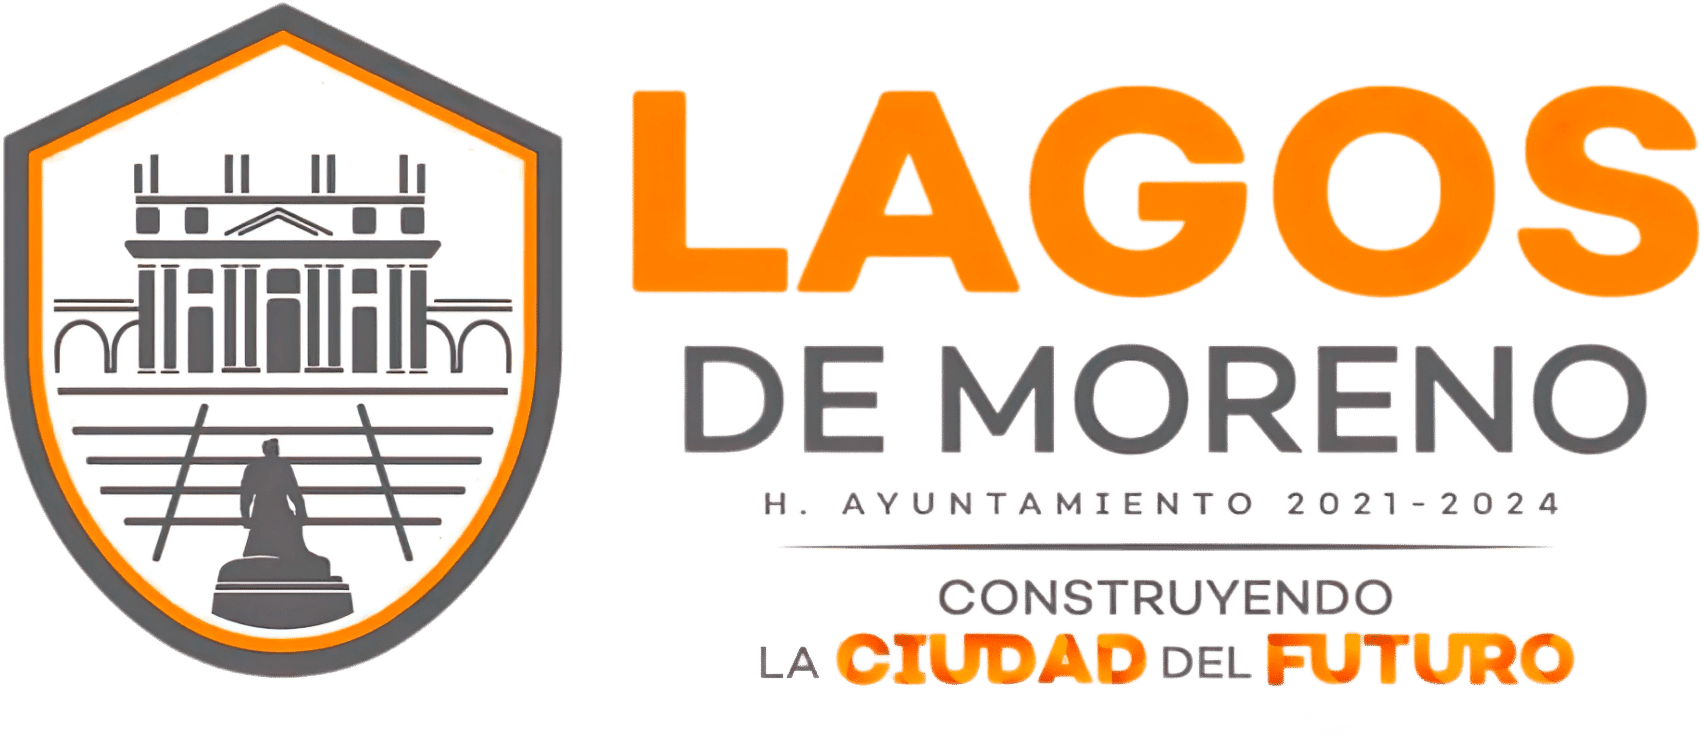 portal del Gobierno de Lagos de Moreno 2021-2024